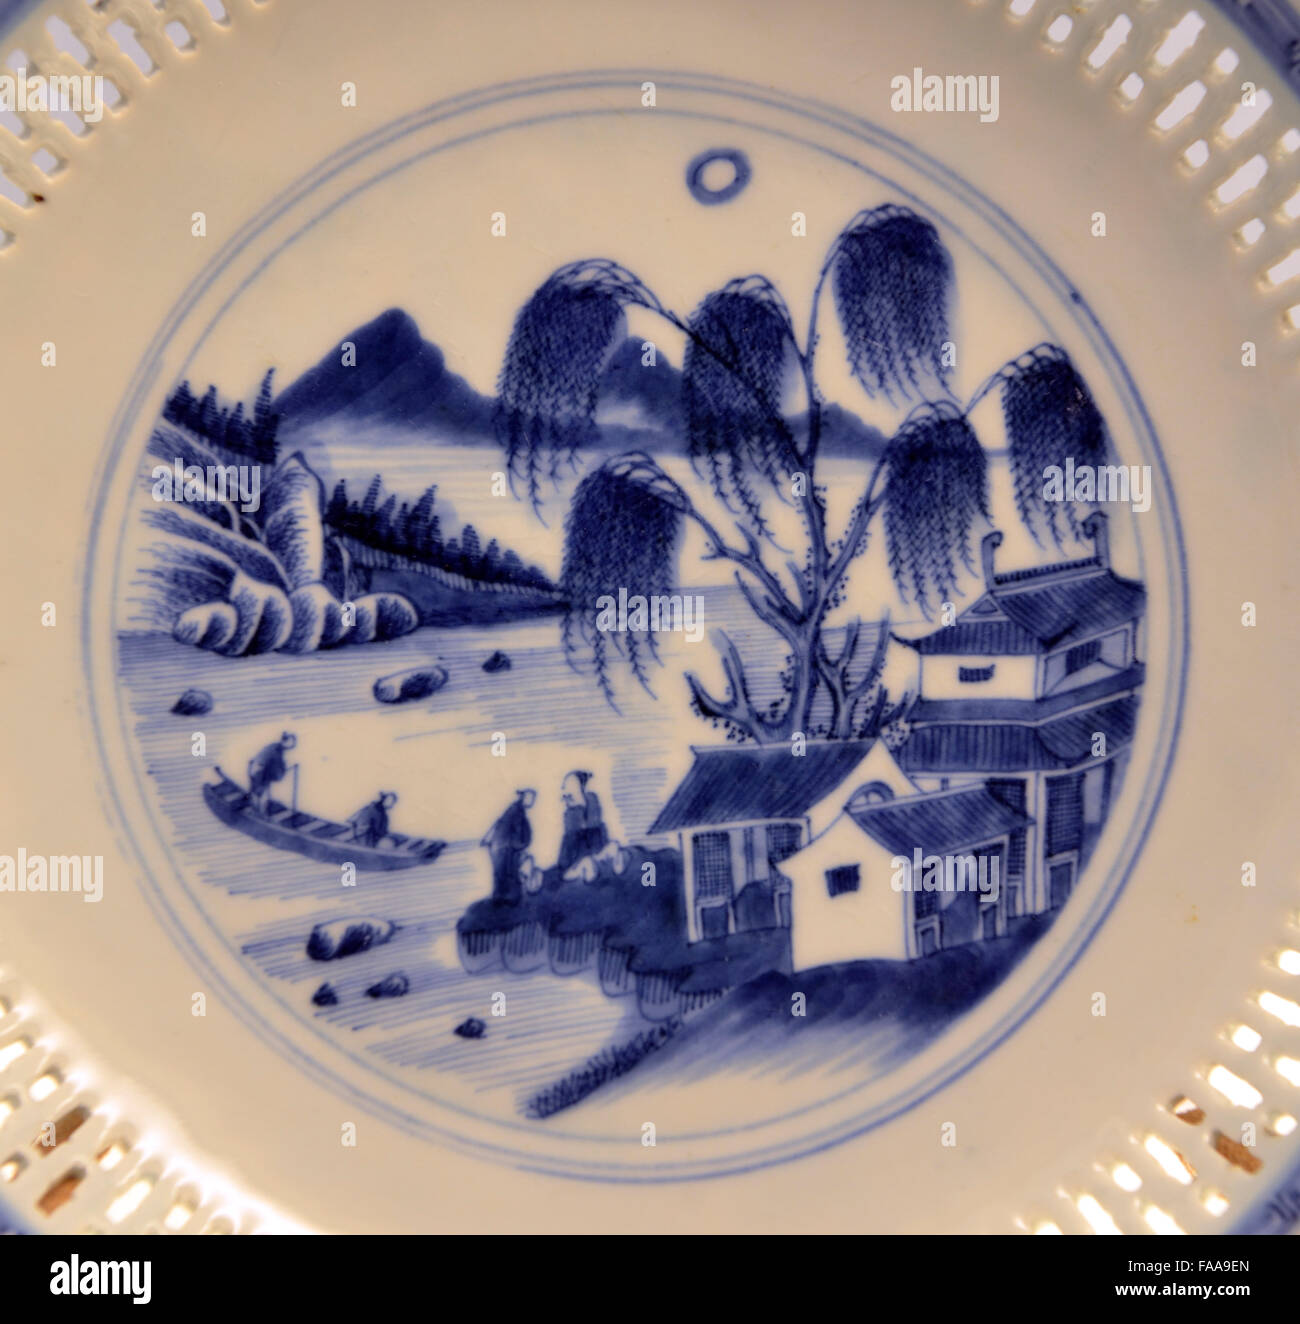 Blau-weiße Schale mit durchbrochenen und eine Landschaft. Jingdezhen Ware. Qing-Dynastie, Jiaqing-Daoguang Regierungszeit 1796-1850. Stockfoto